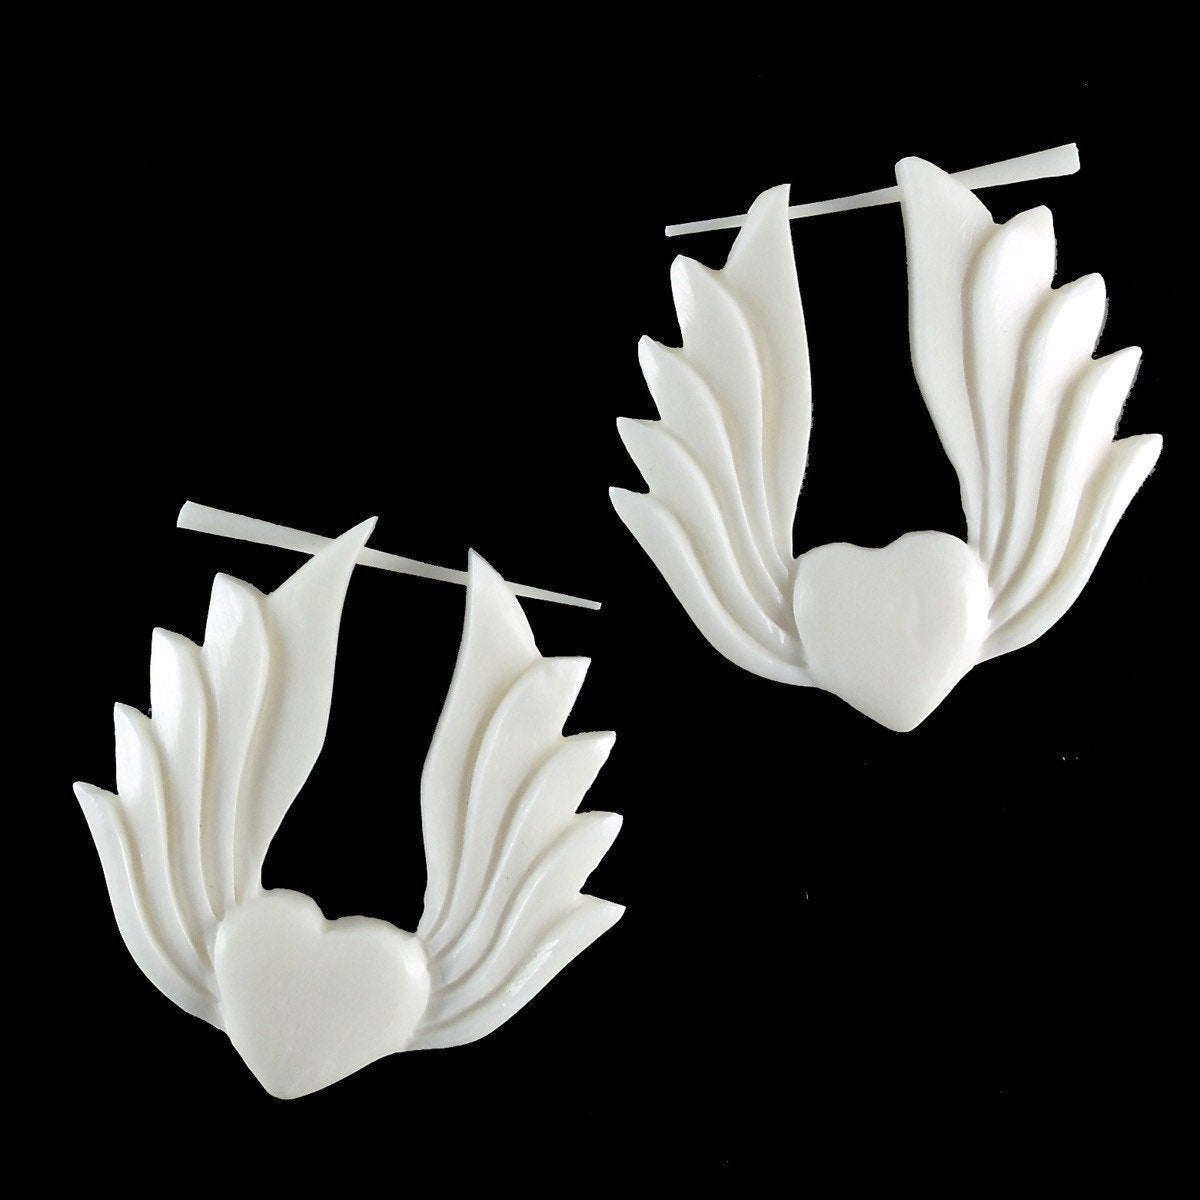 Natural Jewelry :|: Winged Heart. Bone Earrings, 1 1/2 inch W x 1 1/2 inch L. | Tribal Earrings